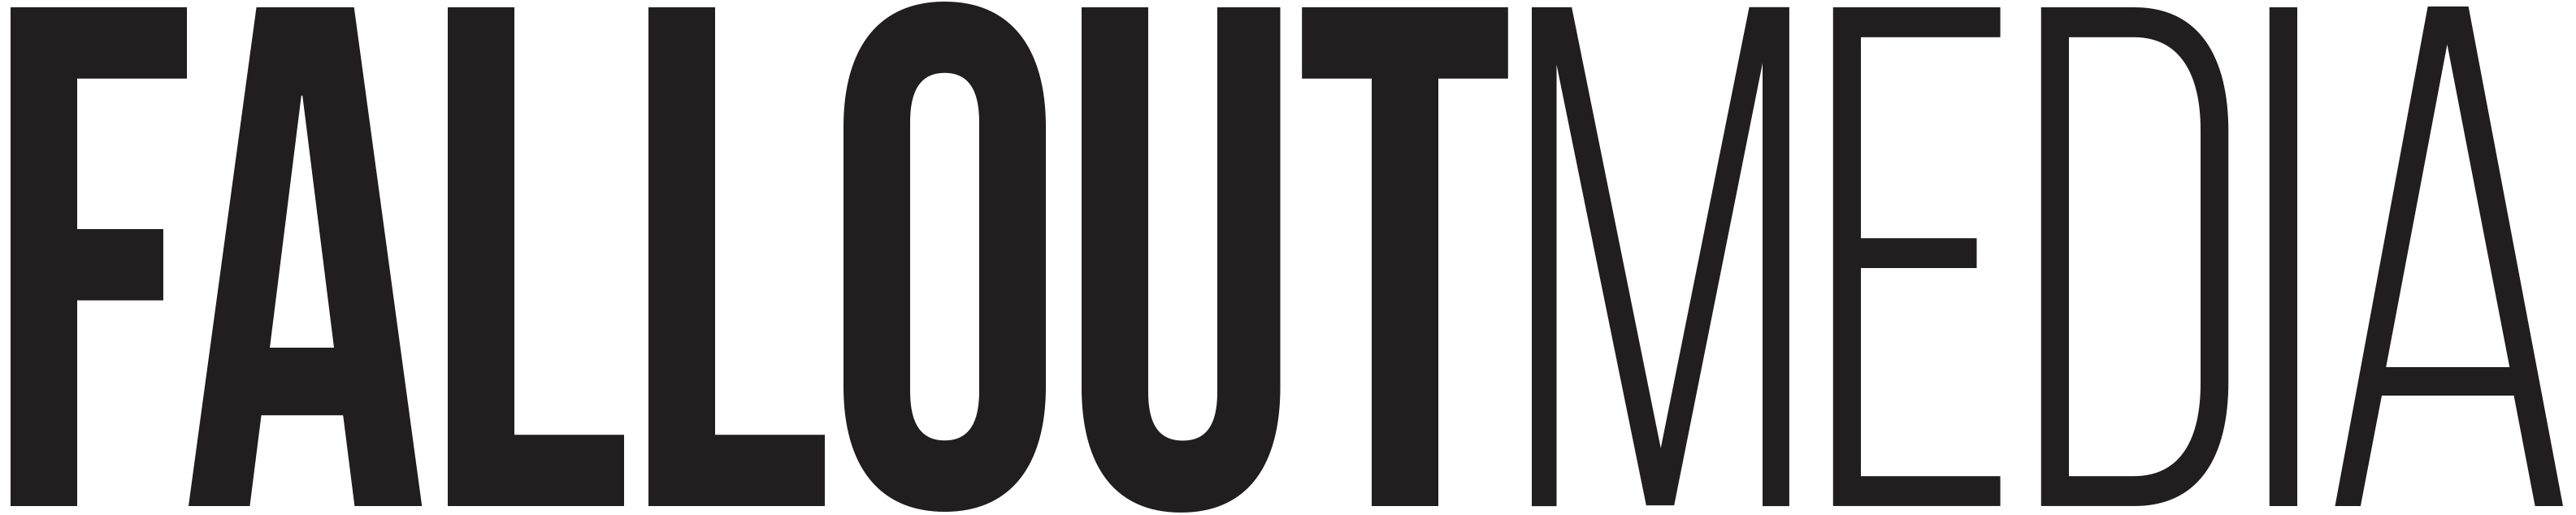 Fallout Media site logo